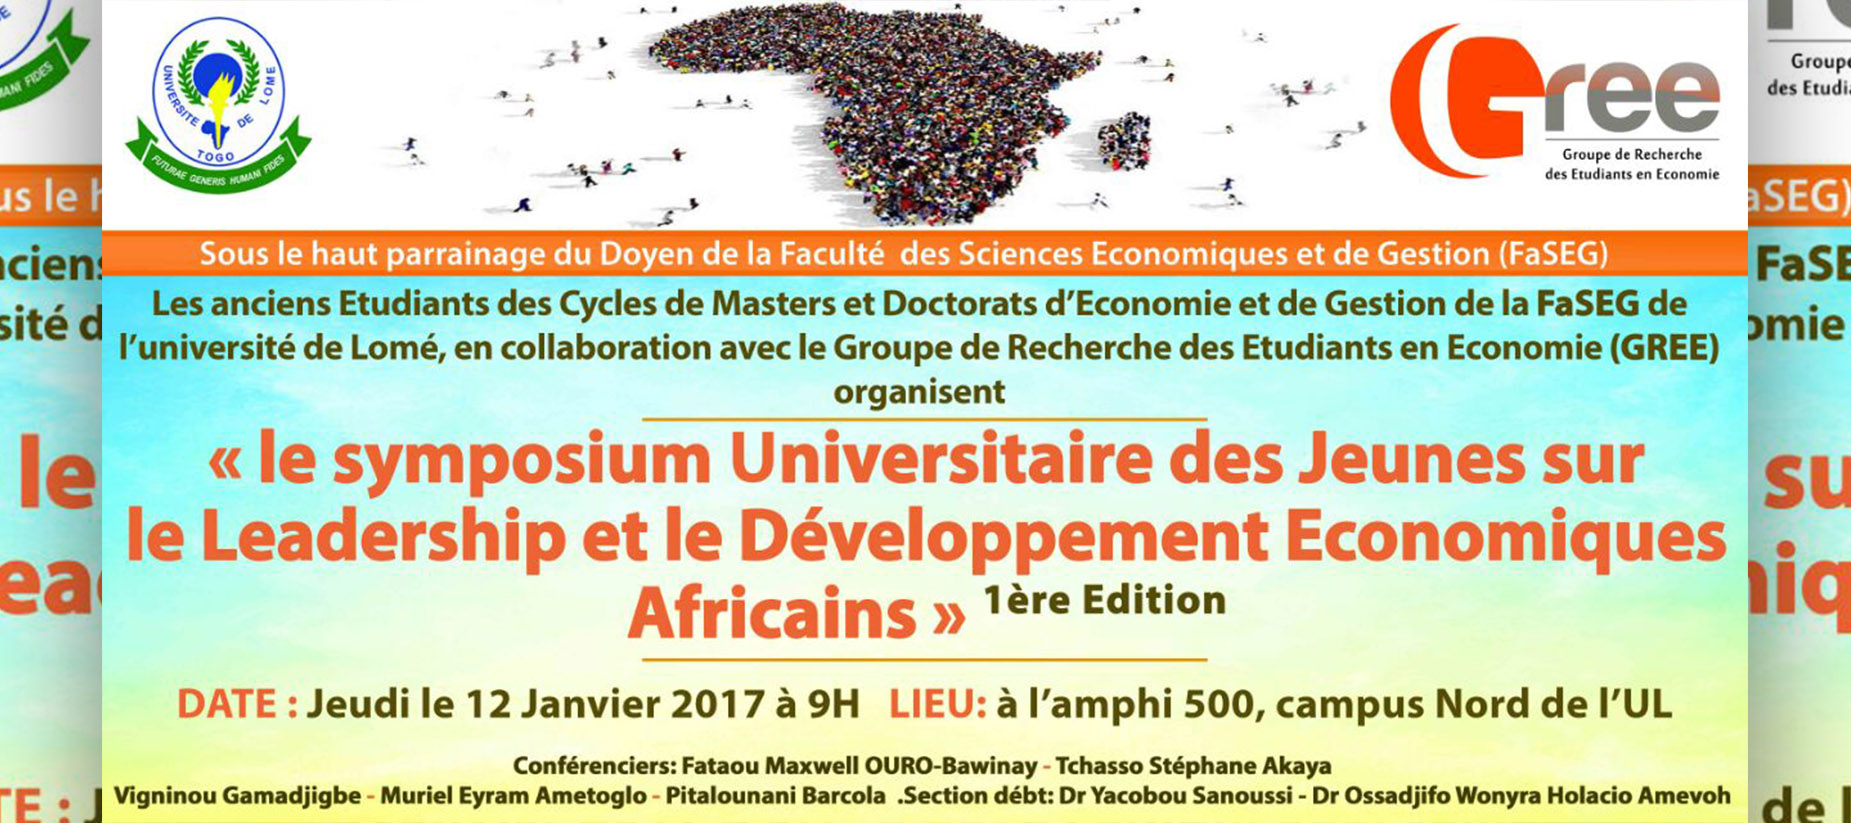 Le Premier Symposium Universitaire des Jeunes sur le Leadership et le Développement Economiques Africains